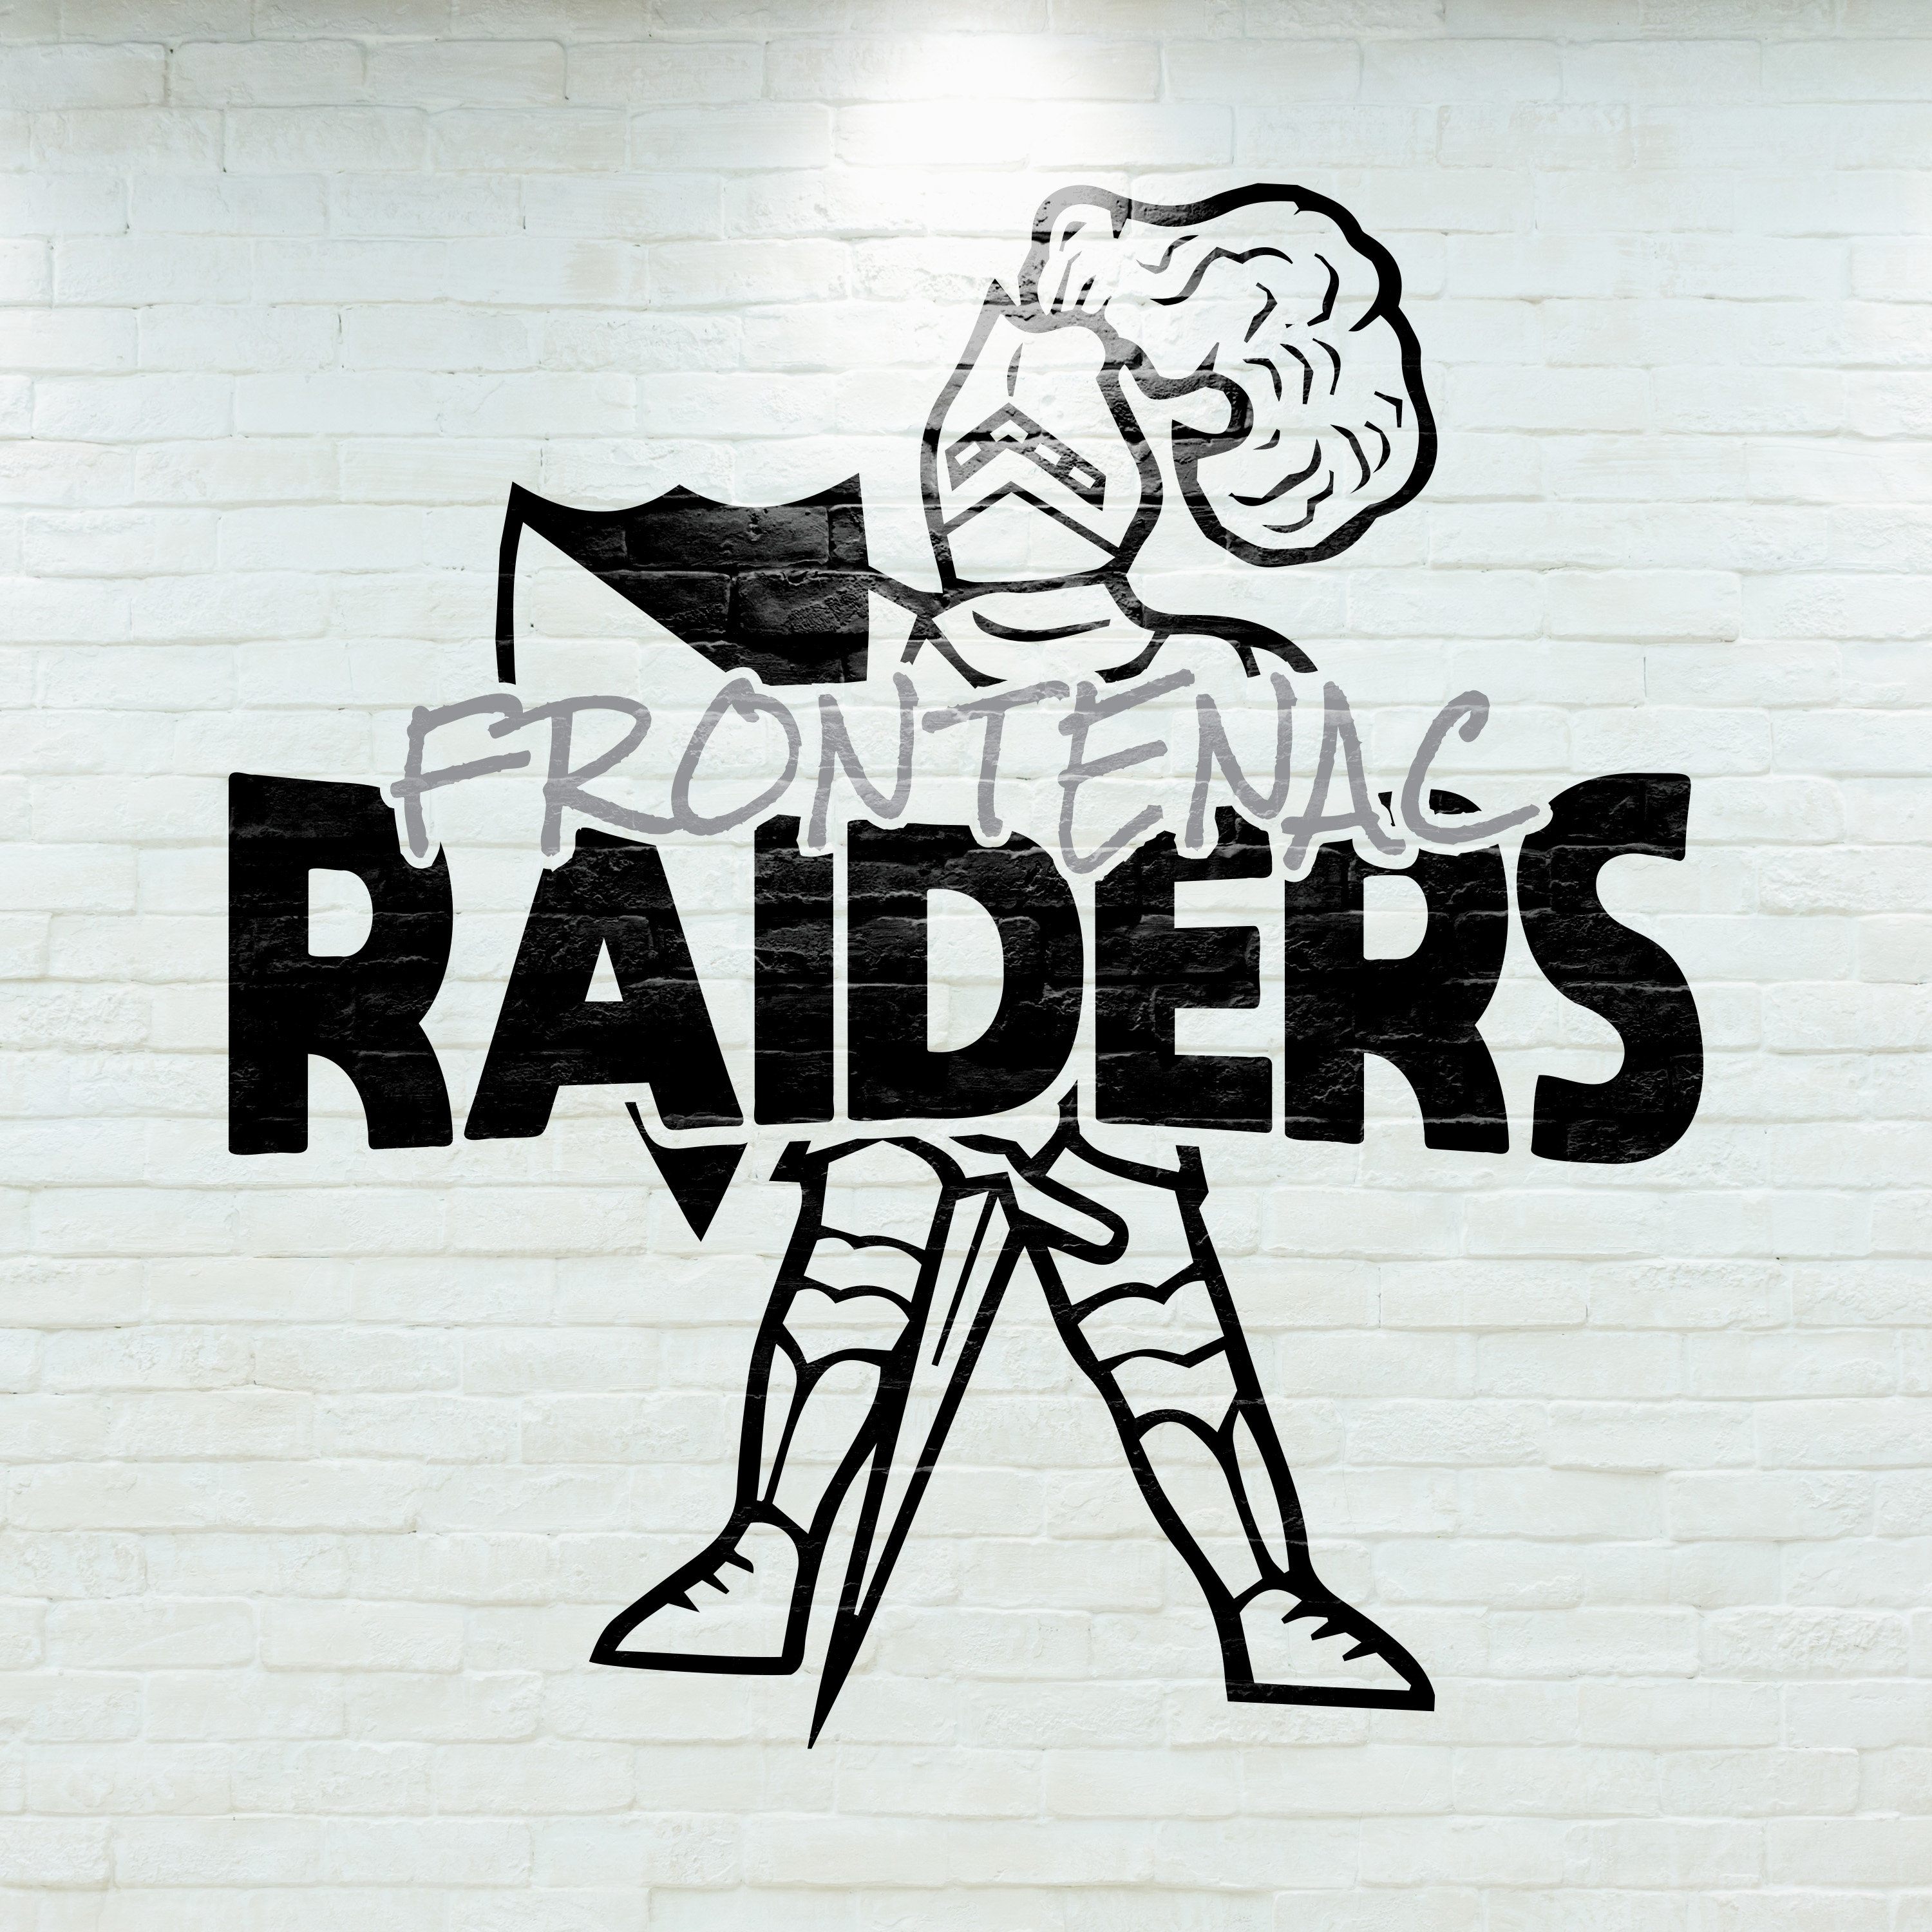 Lv Raiders Custom Logo Kids T-Shirt by Solsketches - Fine Art America